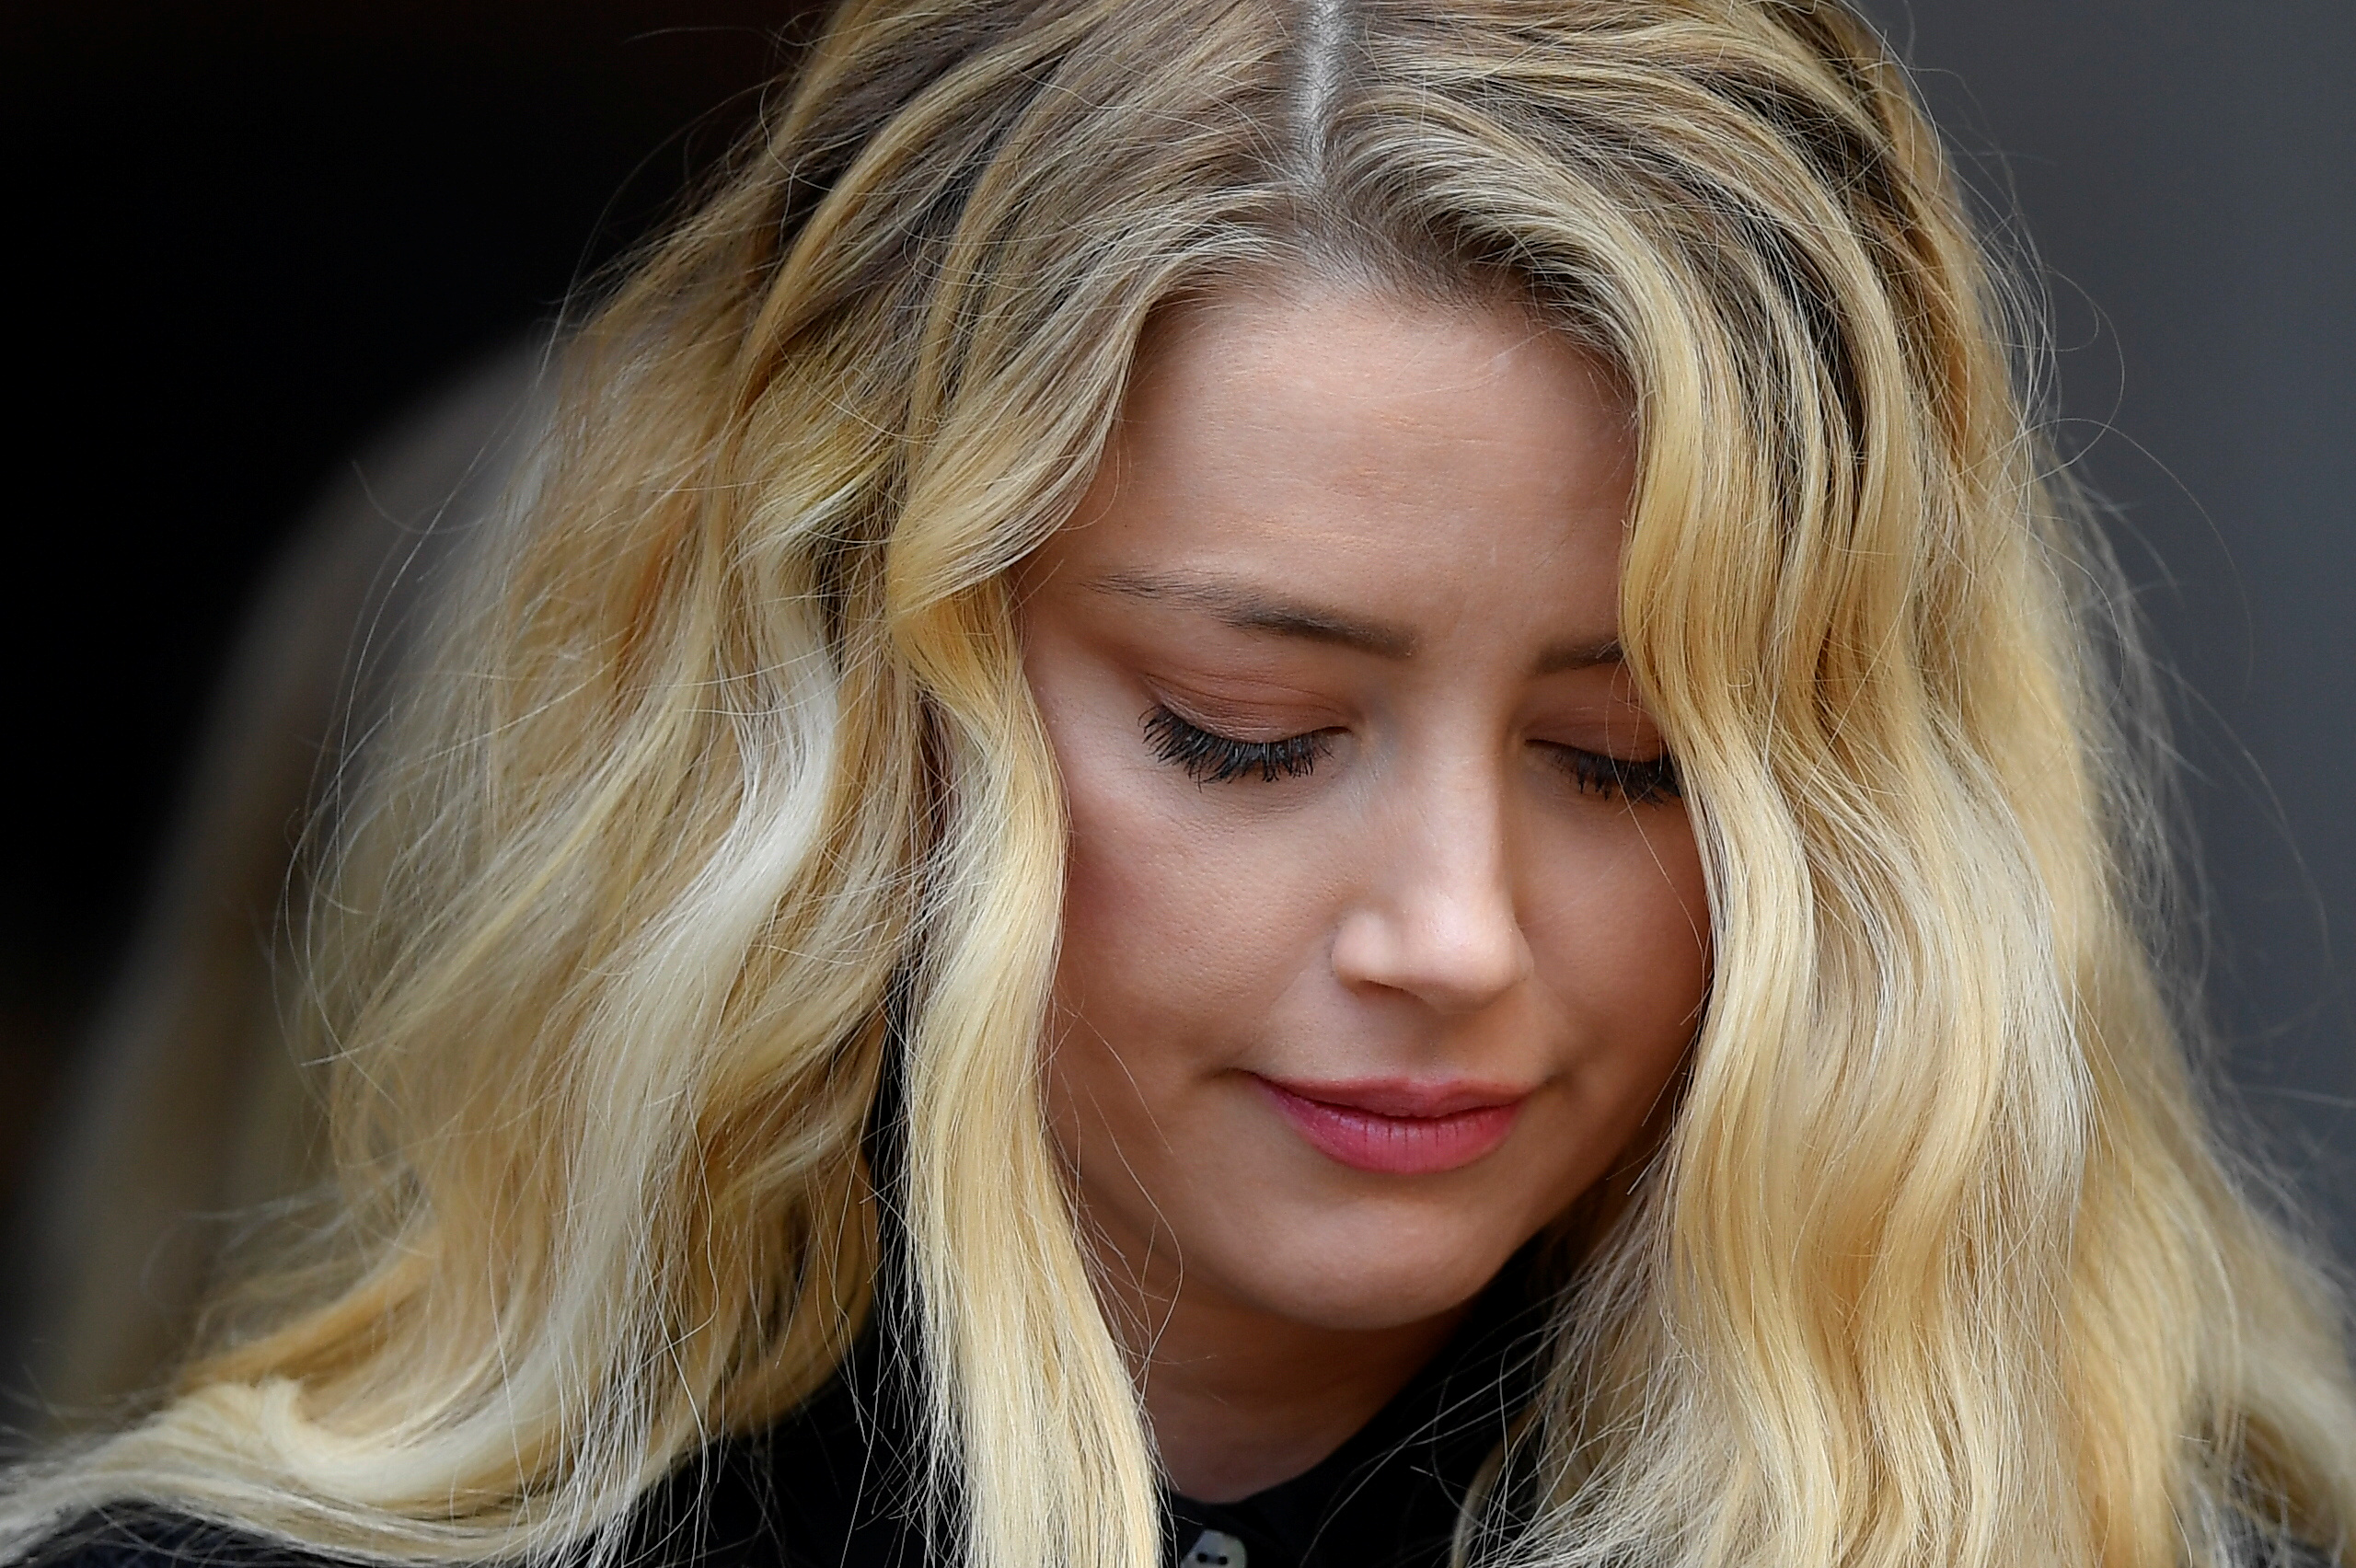 La dura vida de Amber Heard antes de Johnny Depp (Reuters)